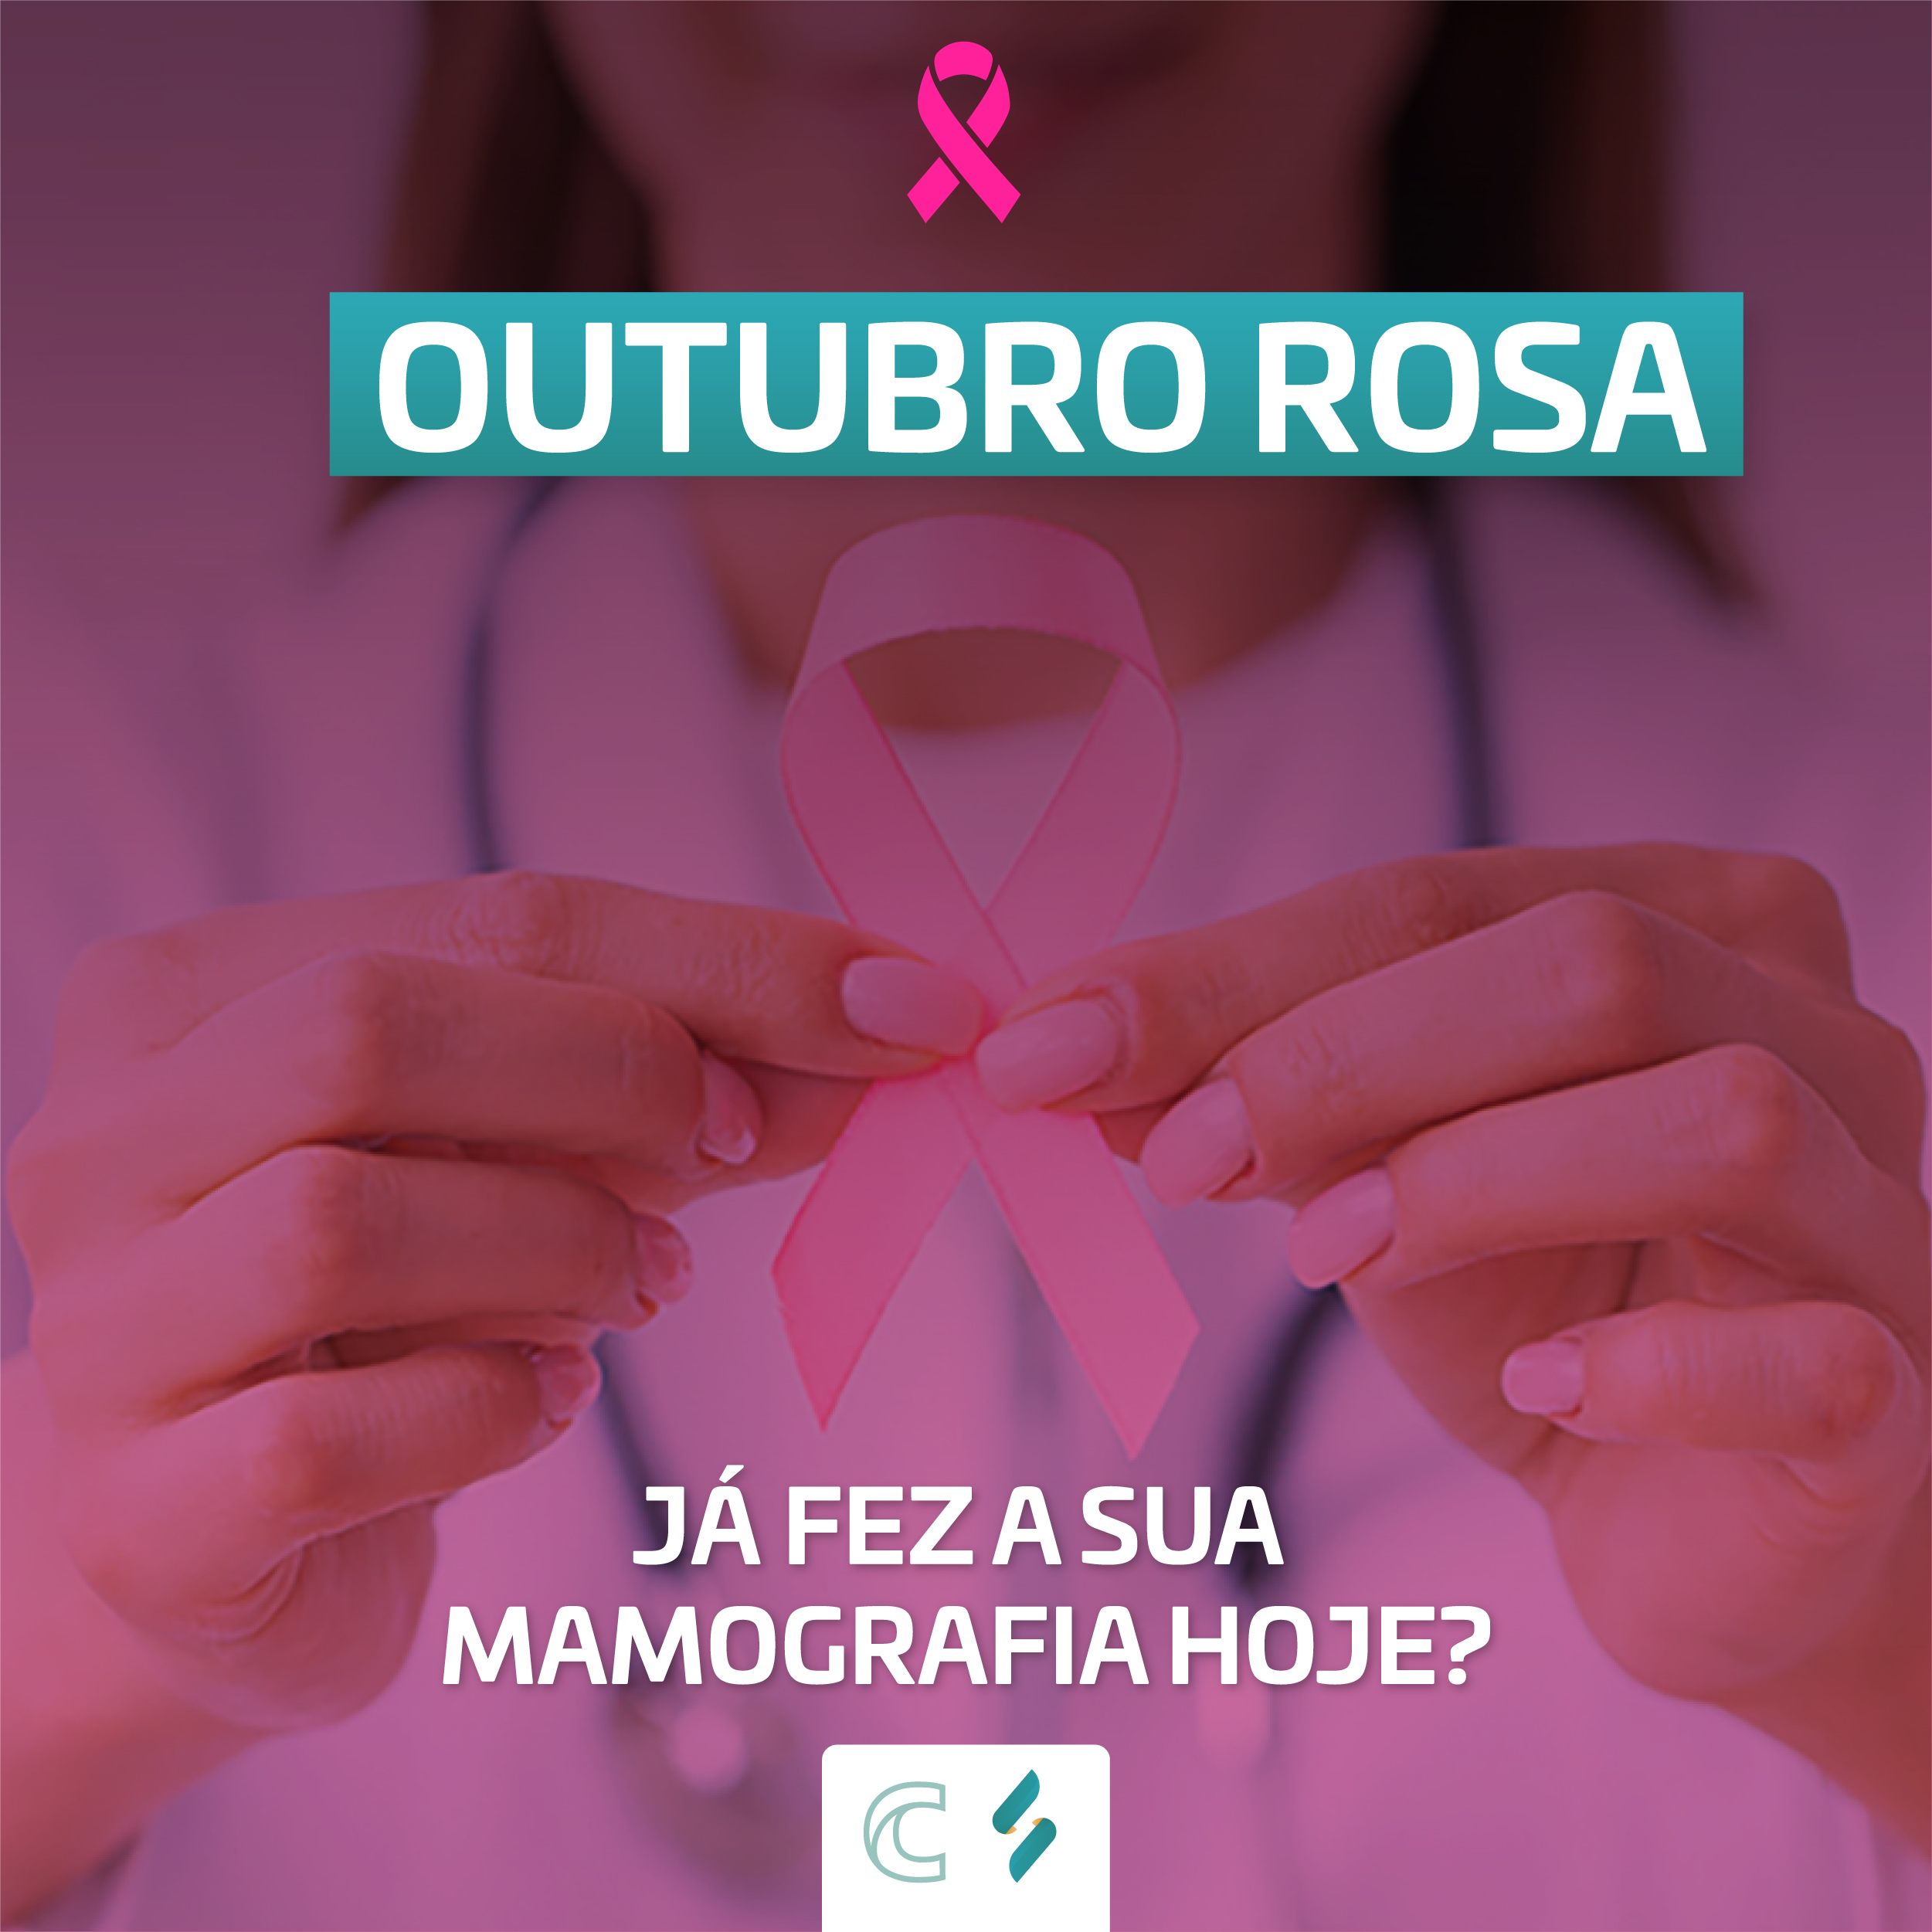 Um alerta COR DE ROSA sobre a importância do diagnóstico precoce do câncer de mama!